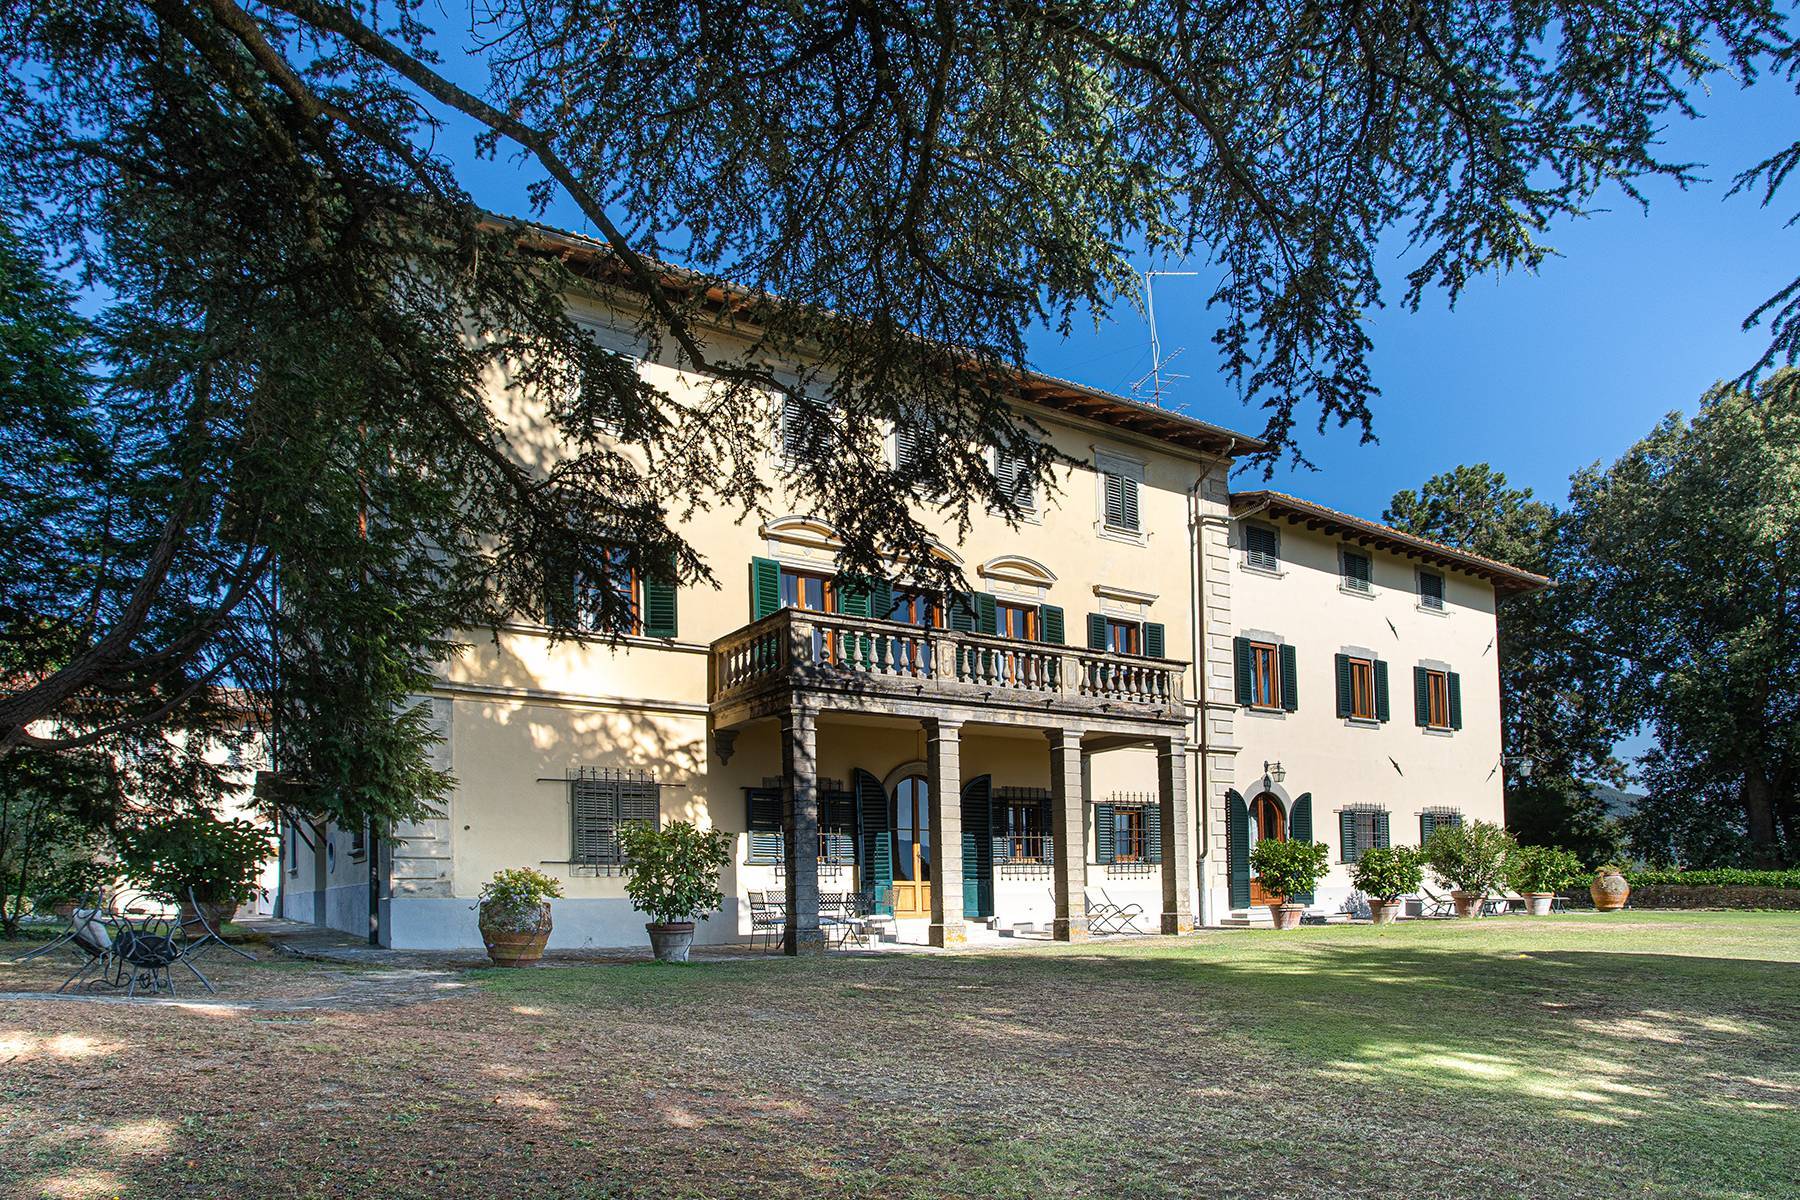 Historic villa in the Mugello valley